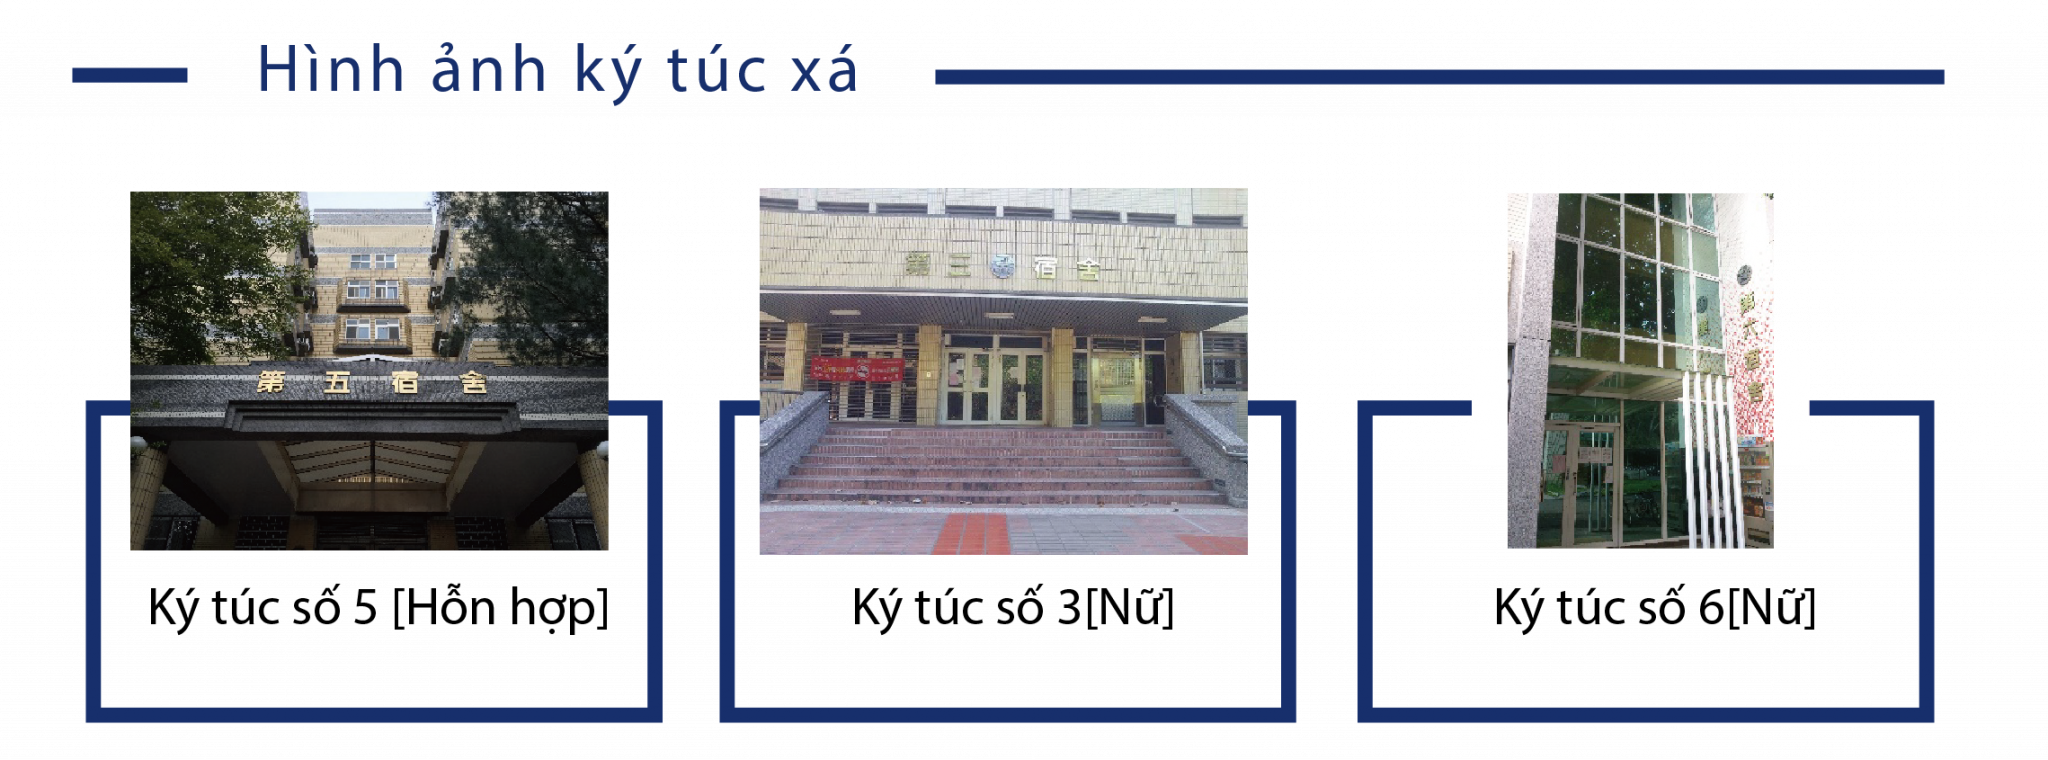 Trường Đại học Sư phạm Changhua Ký túc xá trường.Hình ảnh ký túc xá.